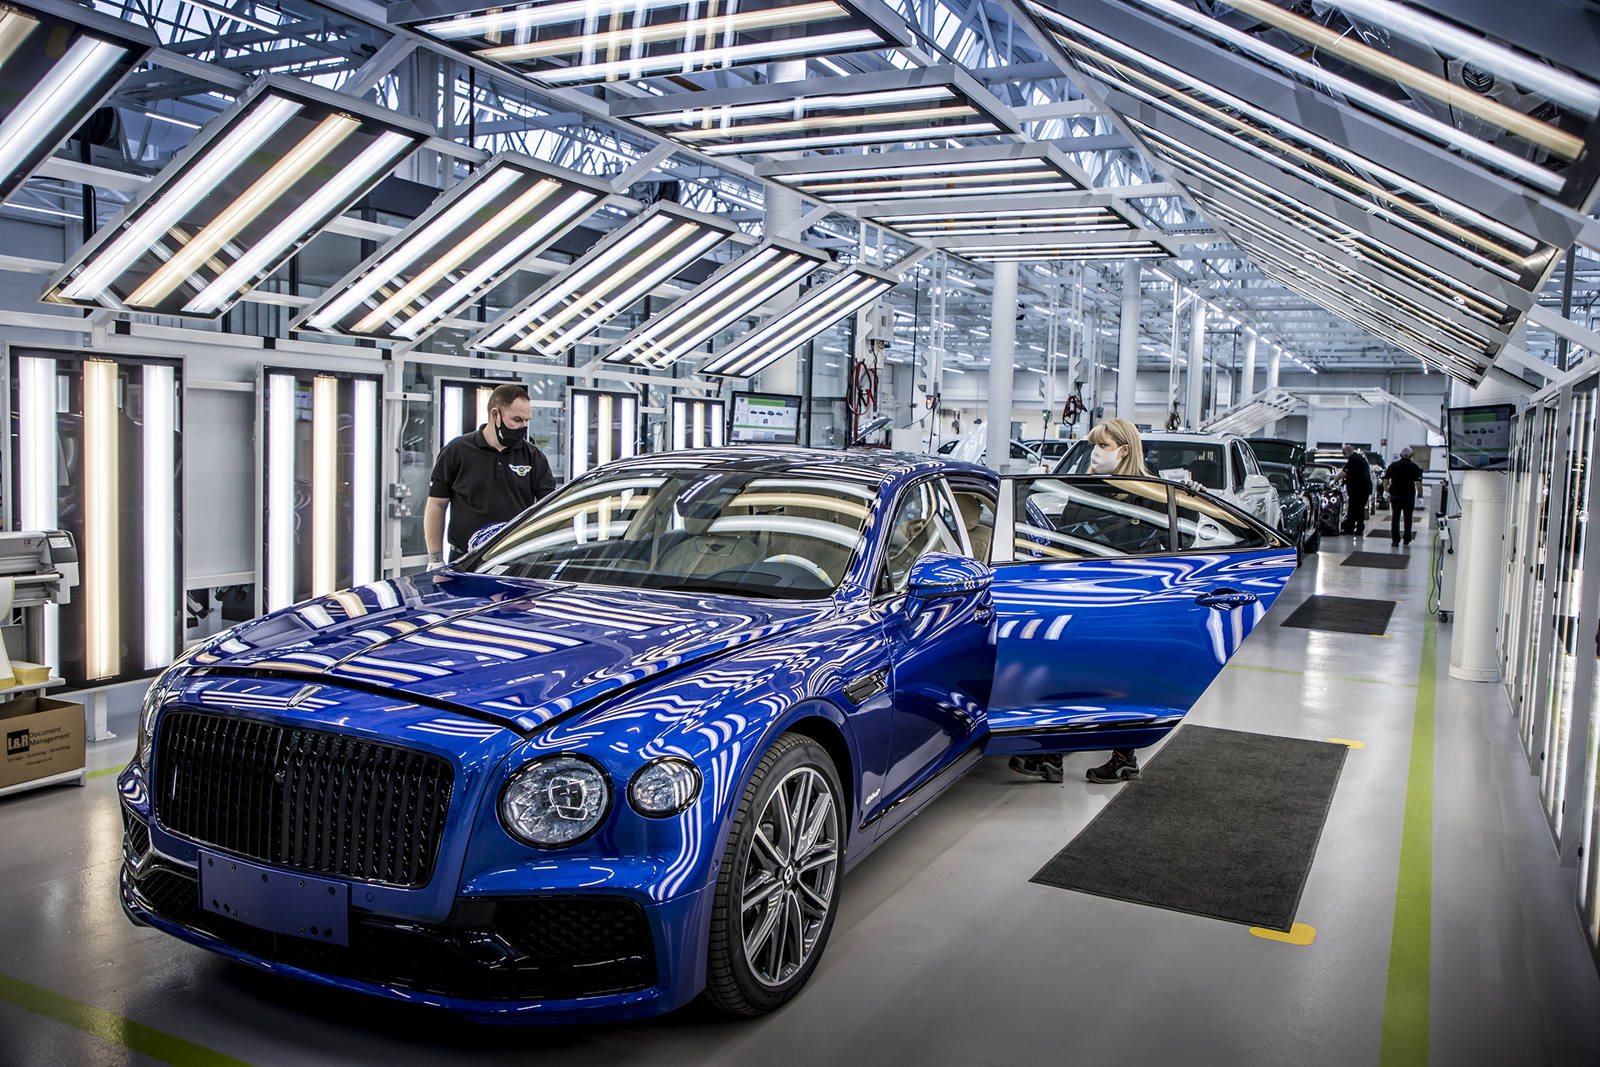 Nghịch lý của Bentley: Bán xe ít, bất ổn kinh tế toàn cầu nhưng vẫn lãi lớn